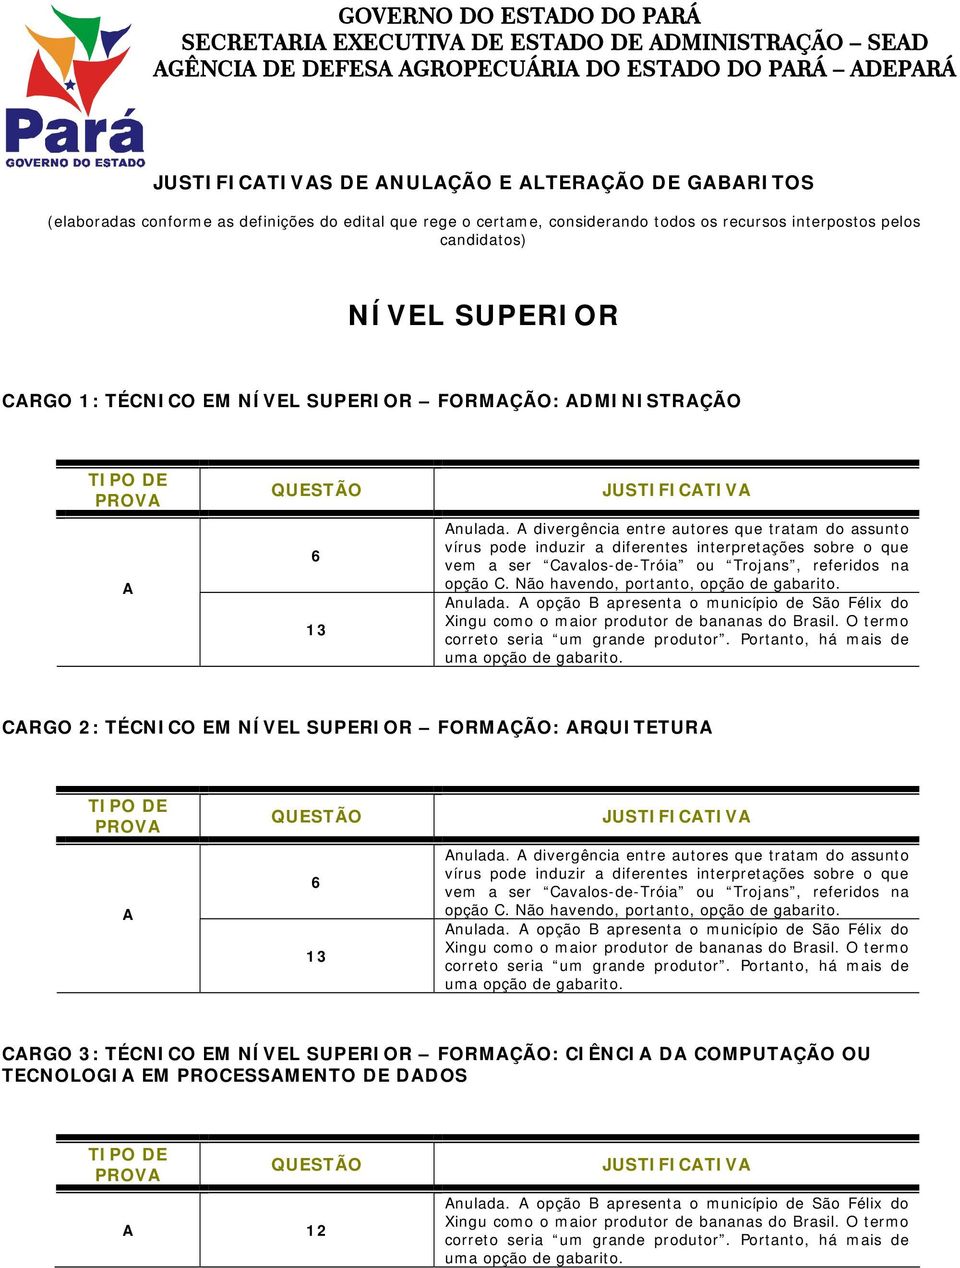 divergência entre autores que tratam do assunto nulada. opção B apresenta o município de São Félix do CRGO 2: TÉCNICO EM NÍVEL SUPERIOR FORMÇÃO: RQUITETUR nulada.